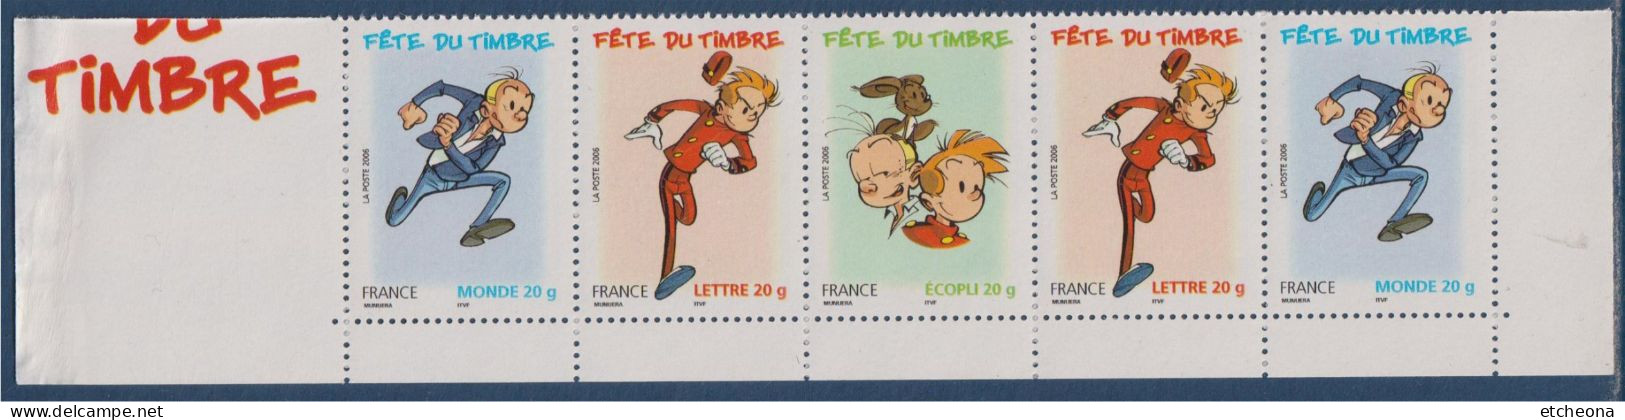 Fête Du Timbre Bande Dessinée Spirou Et Fantasio De José Luis Munuera N°3877a X2;  3878 Et 3879 X2 Neuf 1/2 Carnet - Unused Stamps